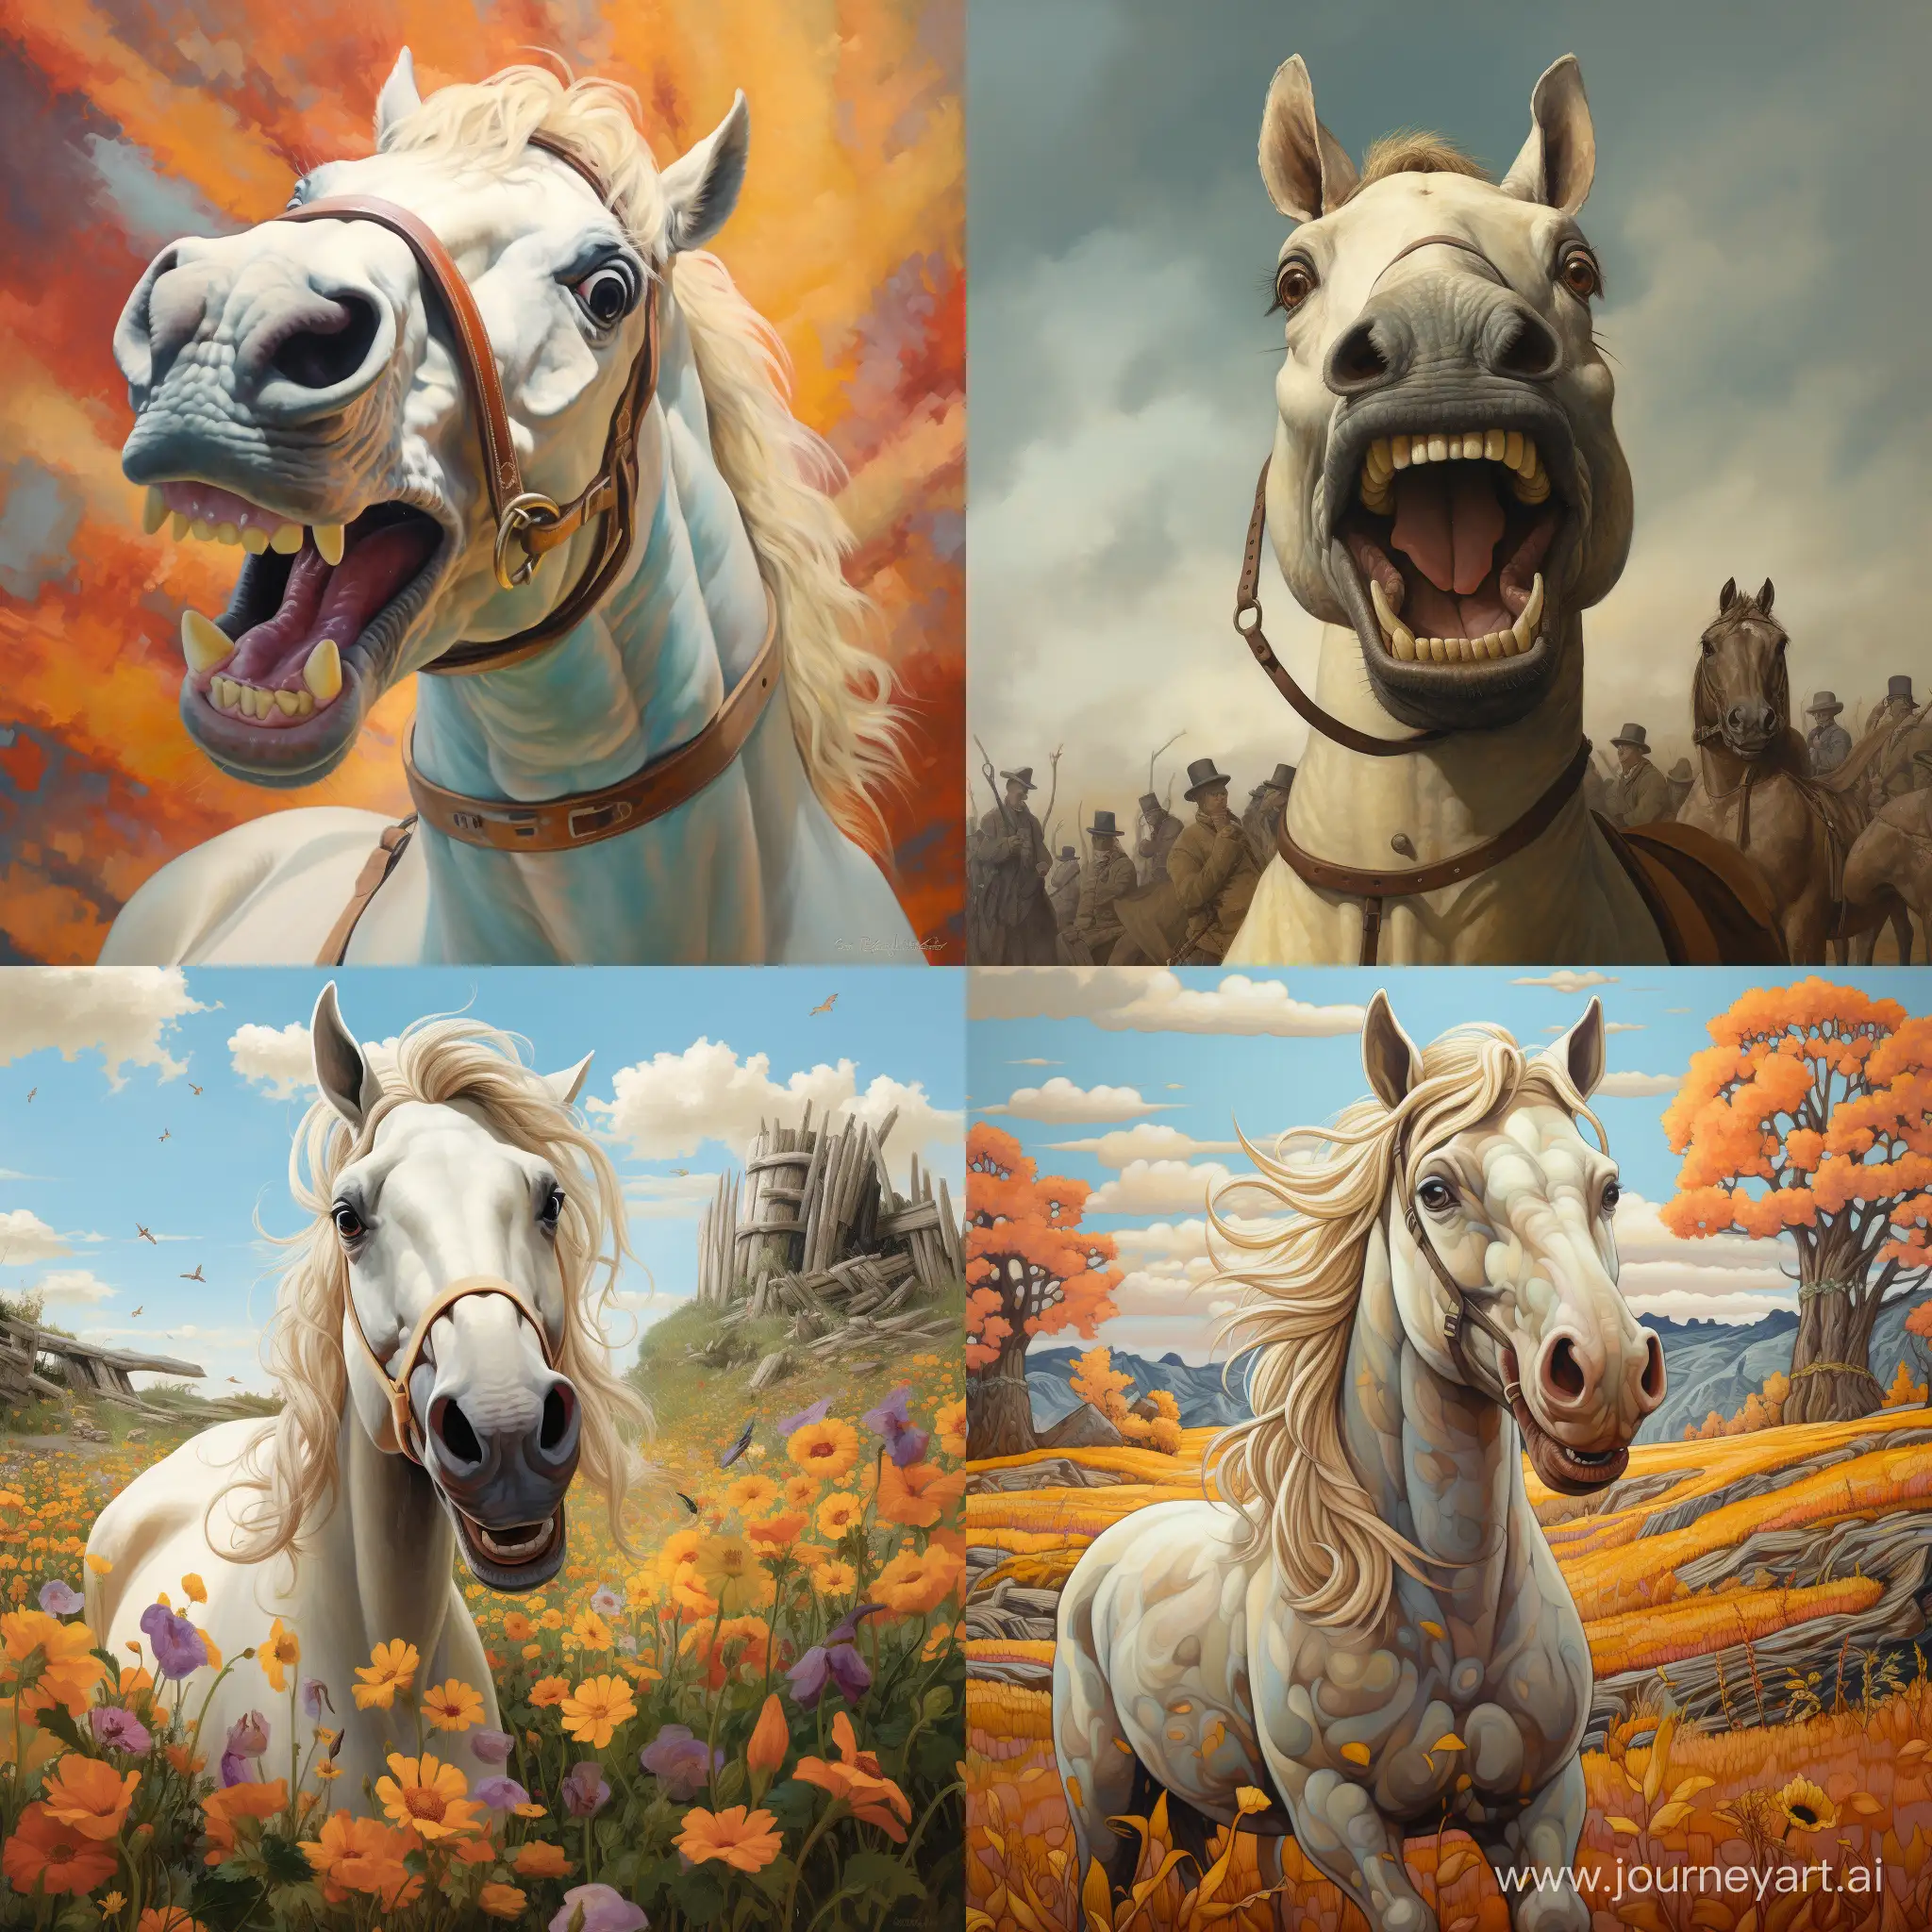 Joyful-Horse-Art-A-Vibrant-11-Aspect-Ratio-Masterpiece